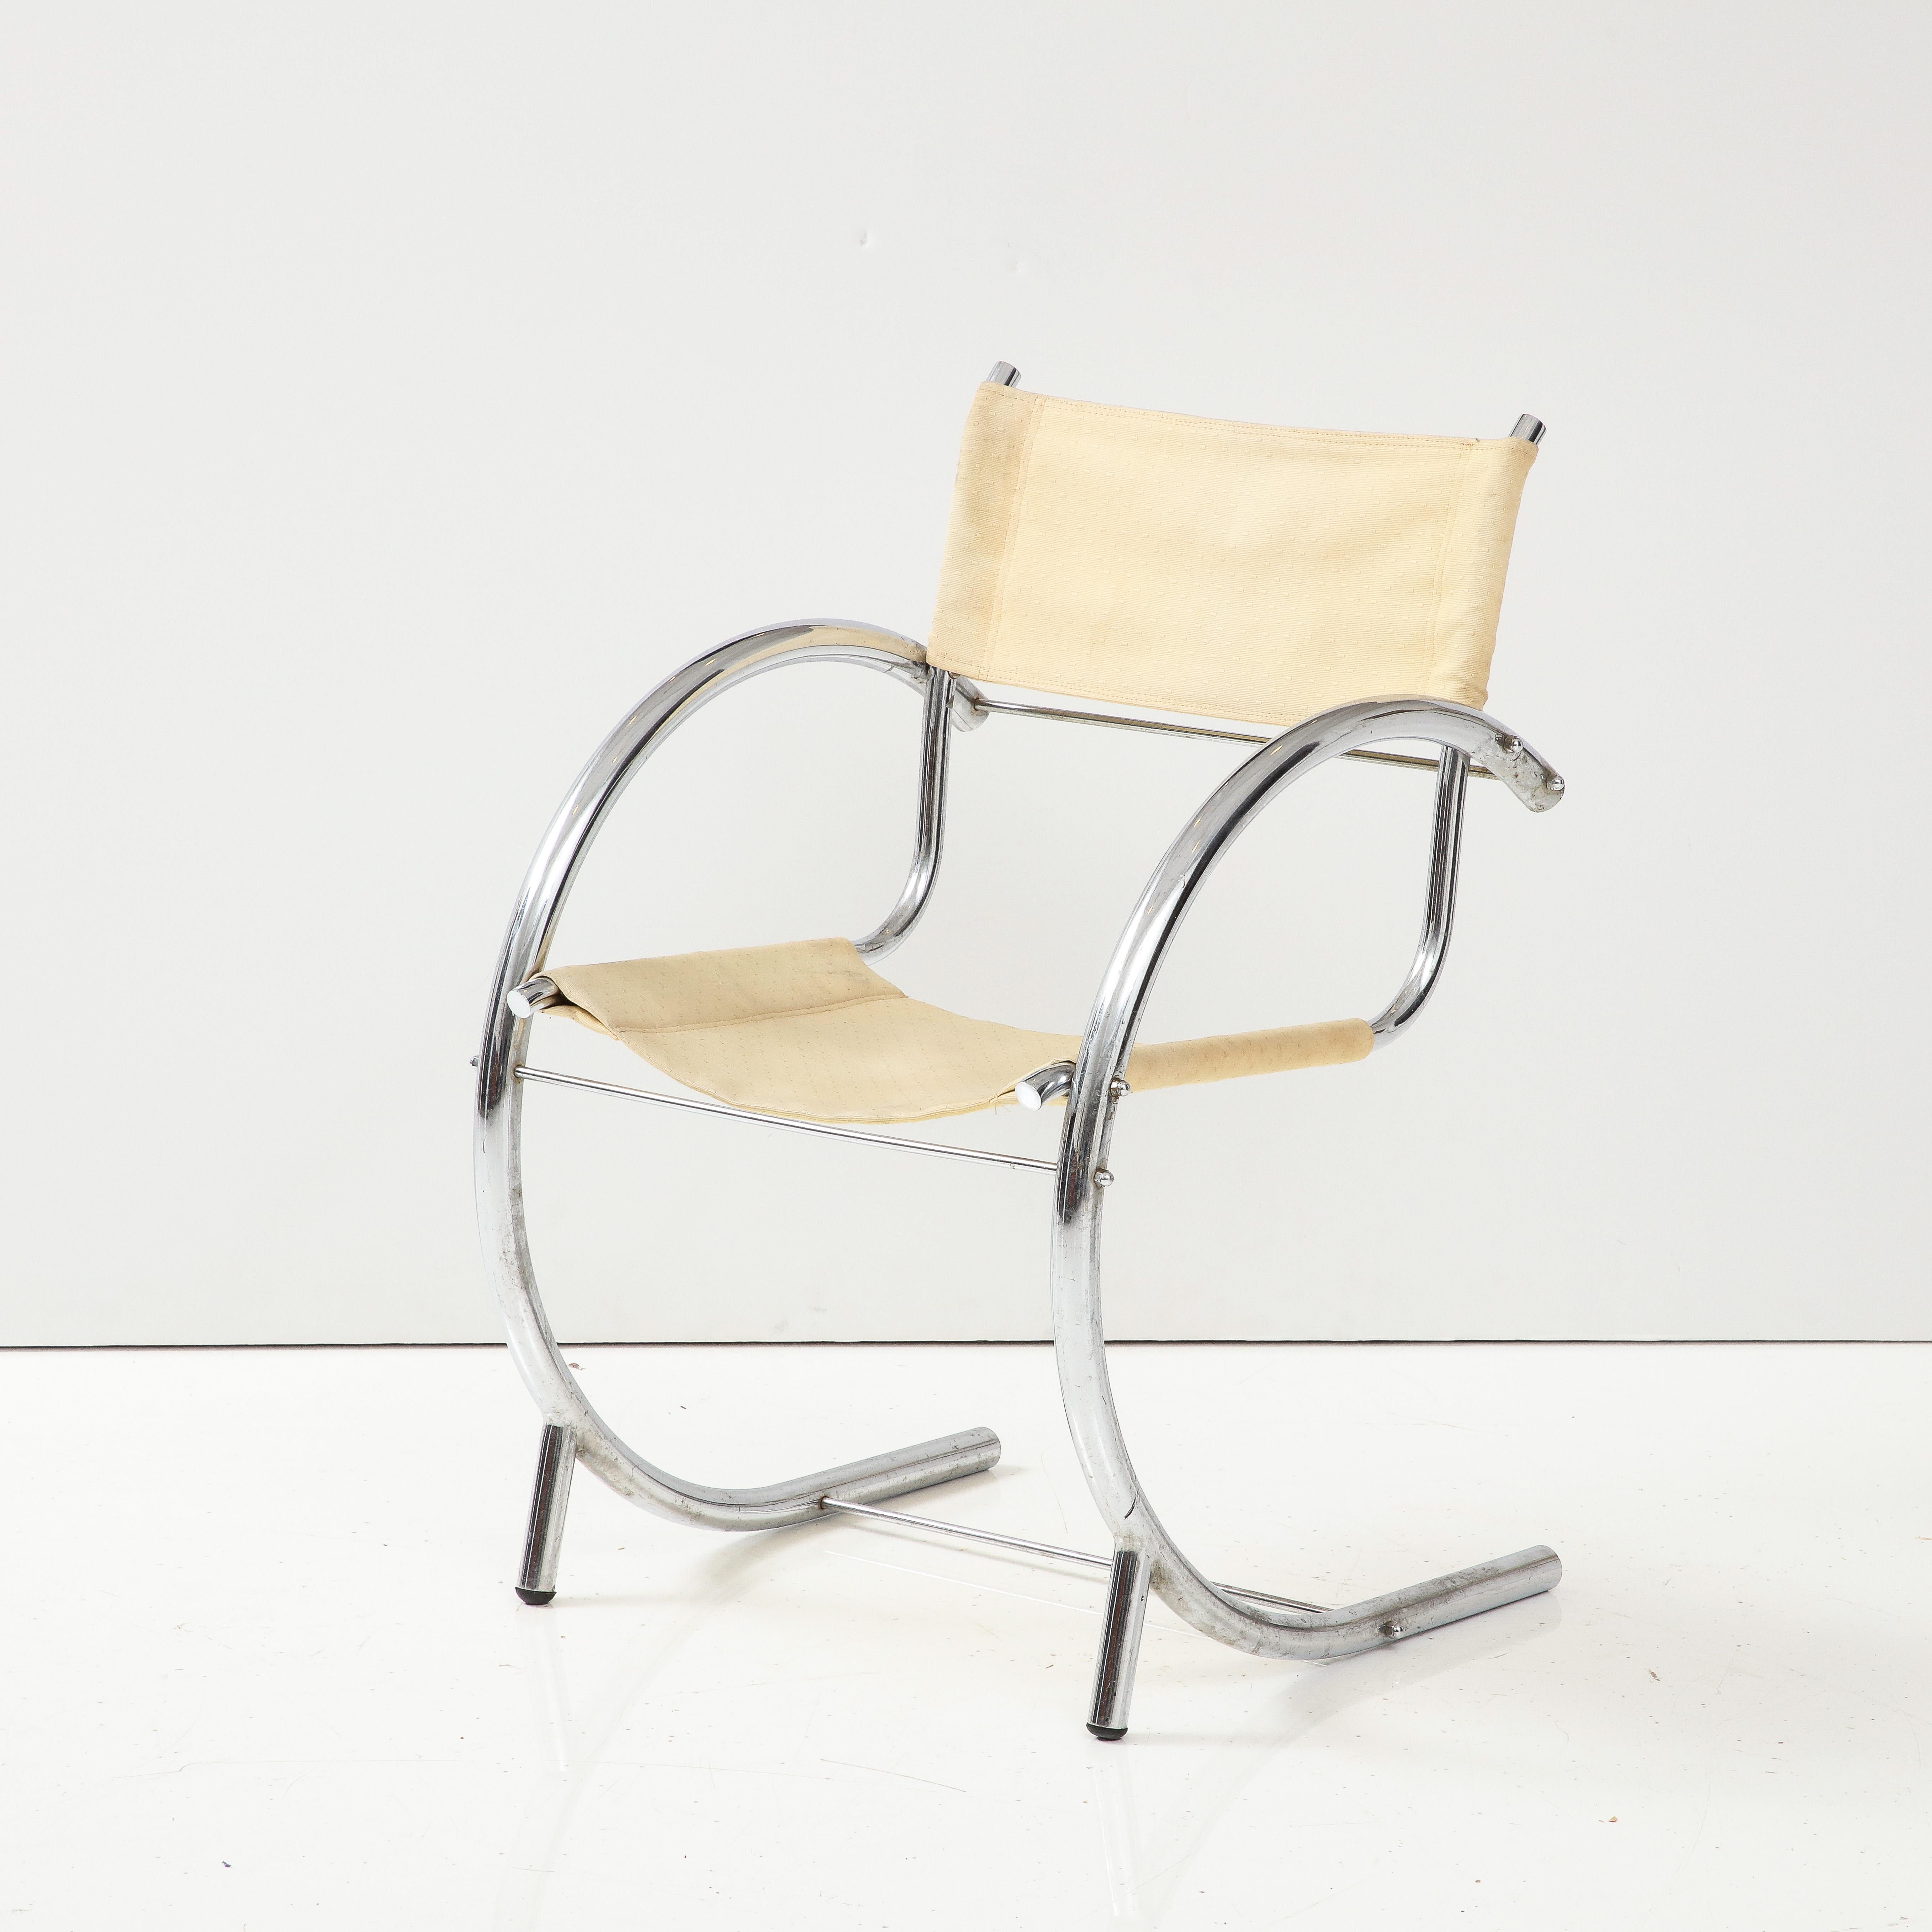 Art Deco Modernist Chrome & Canvas Seat Side Chair, Franc. C. 1930